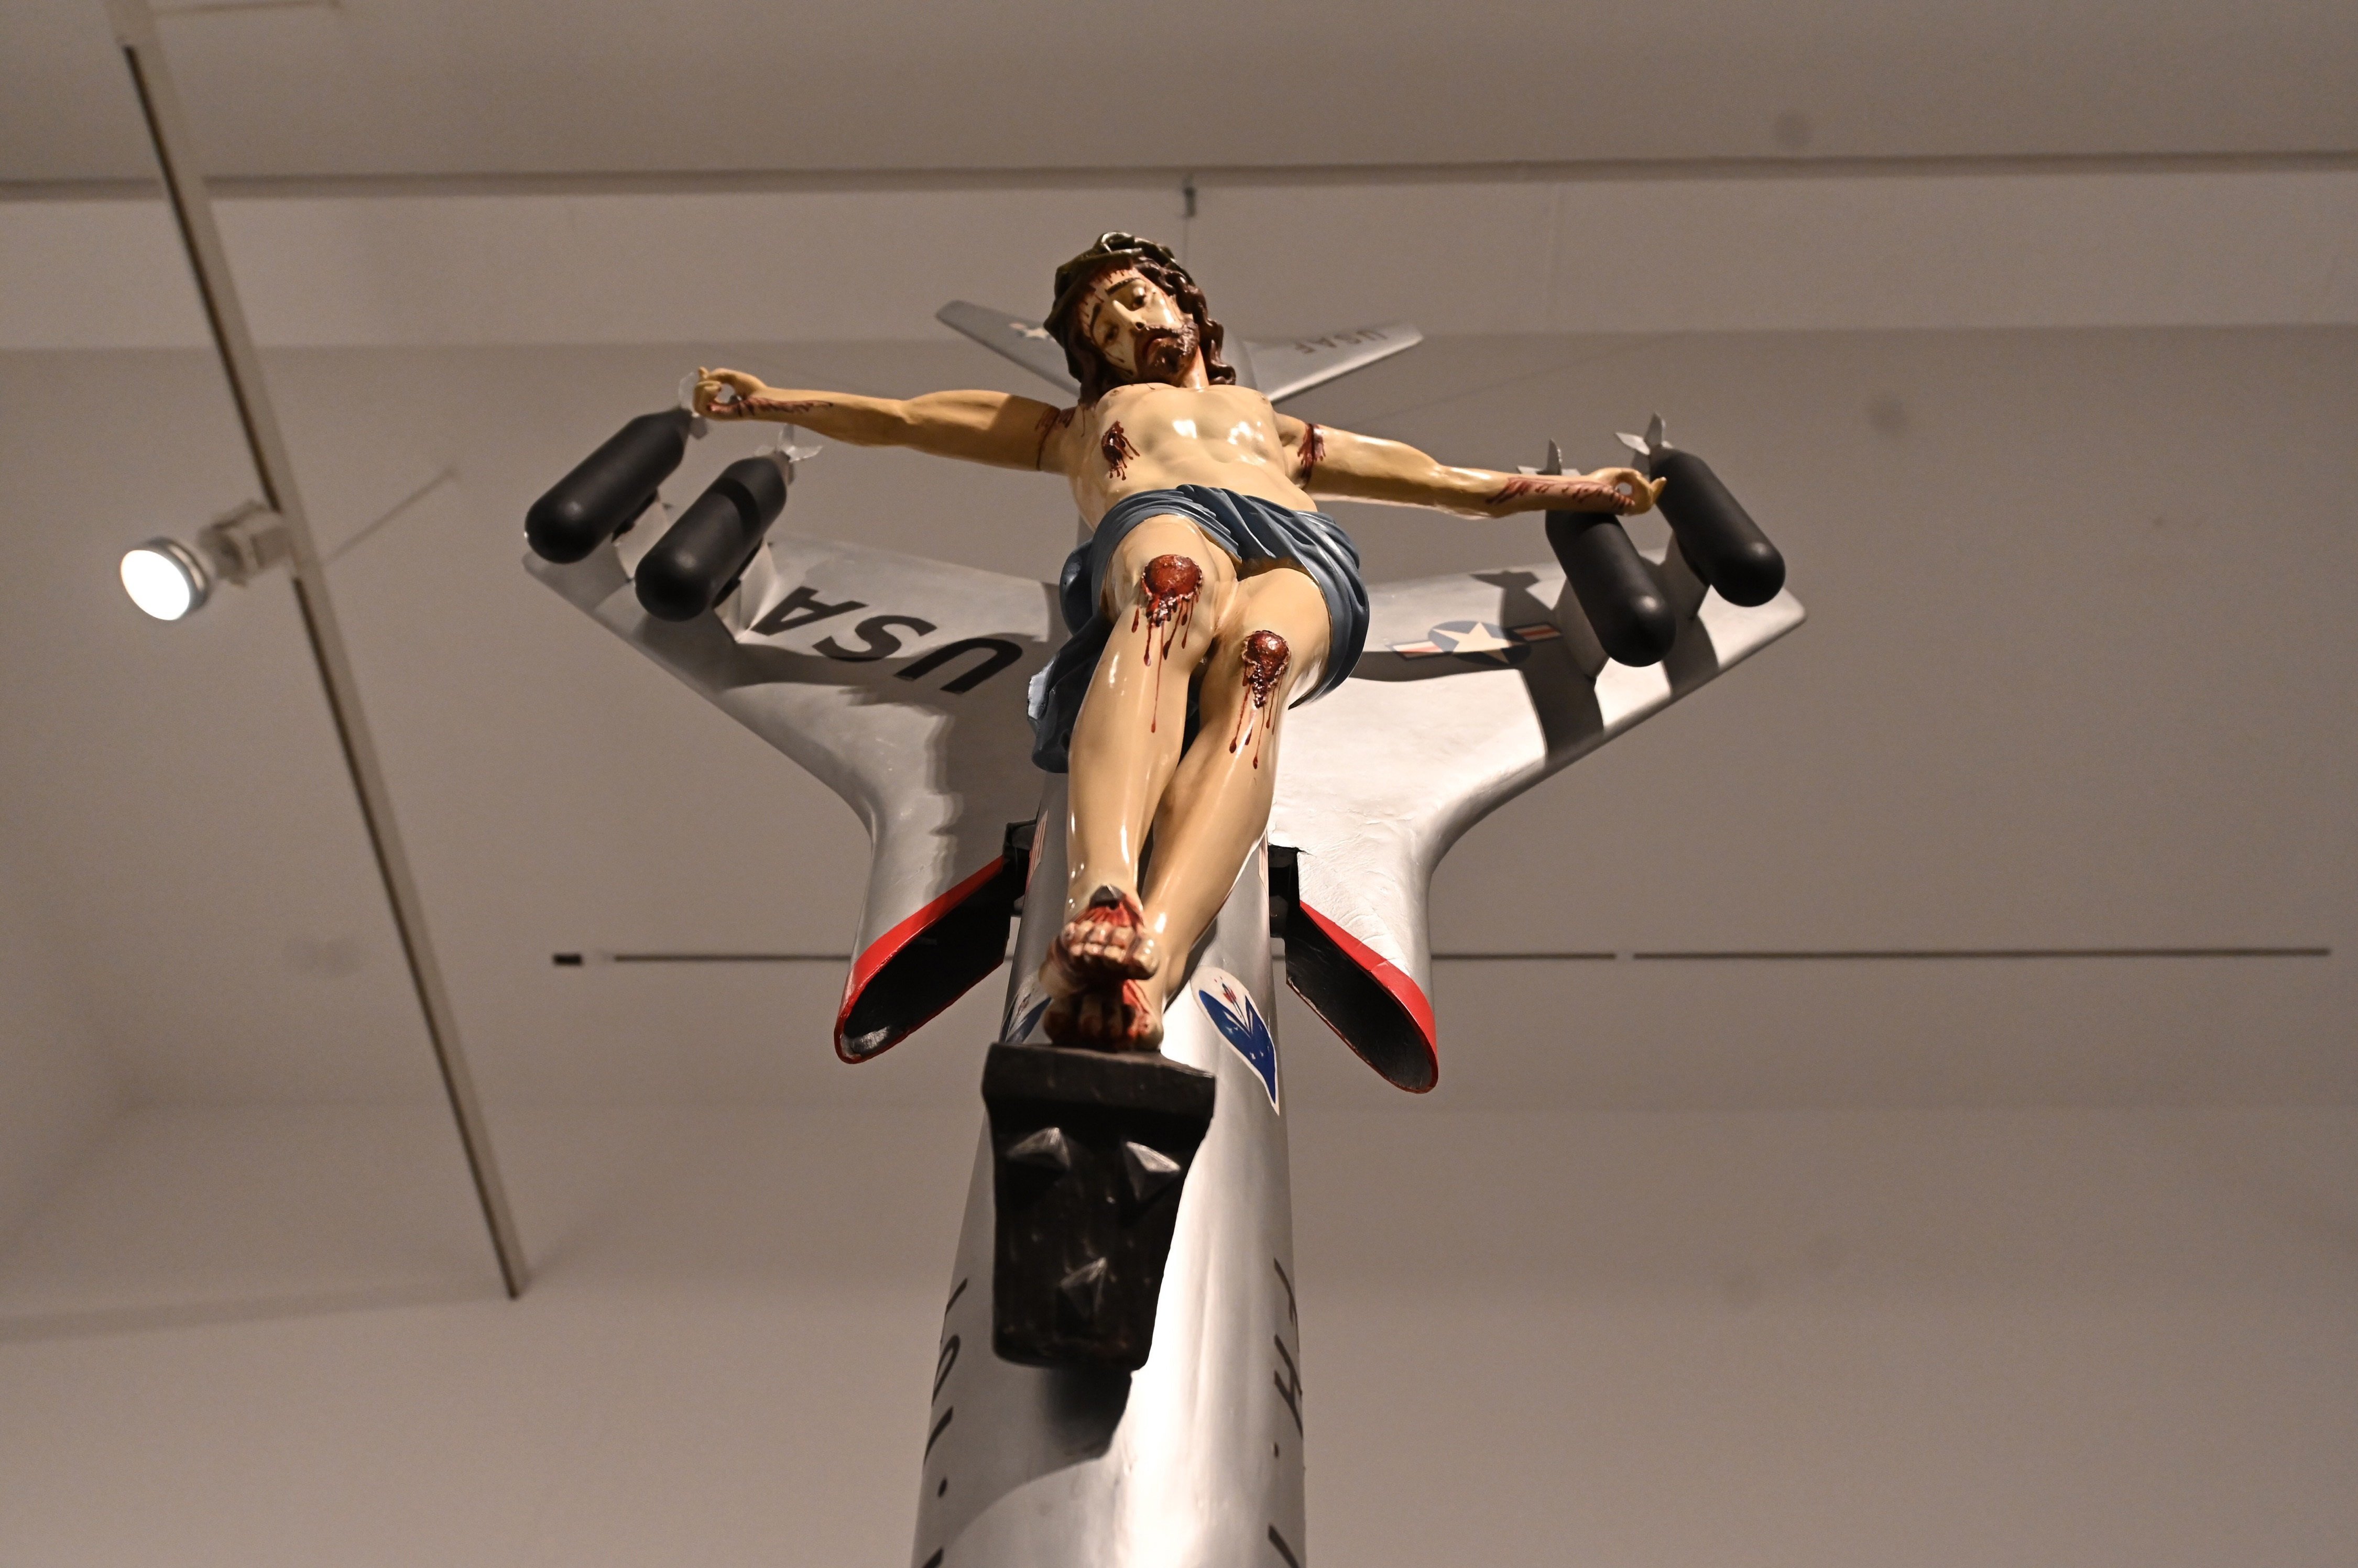 Cristo en un avión y caca de pájaro: la exposición del Reina Sofía que traerá cola